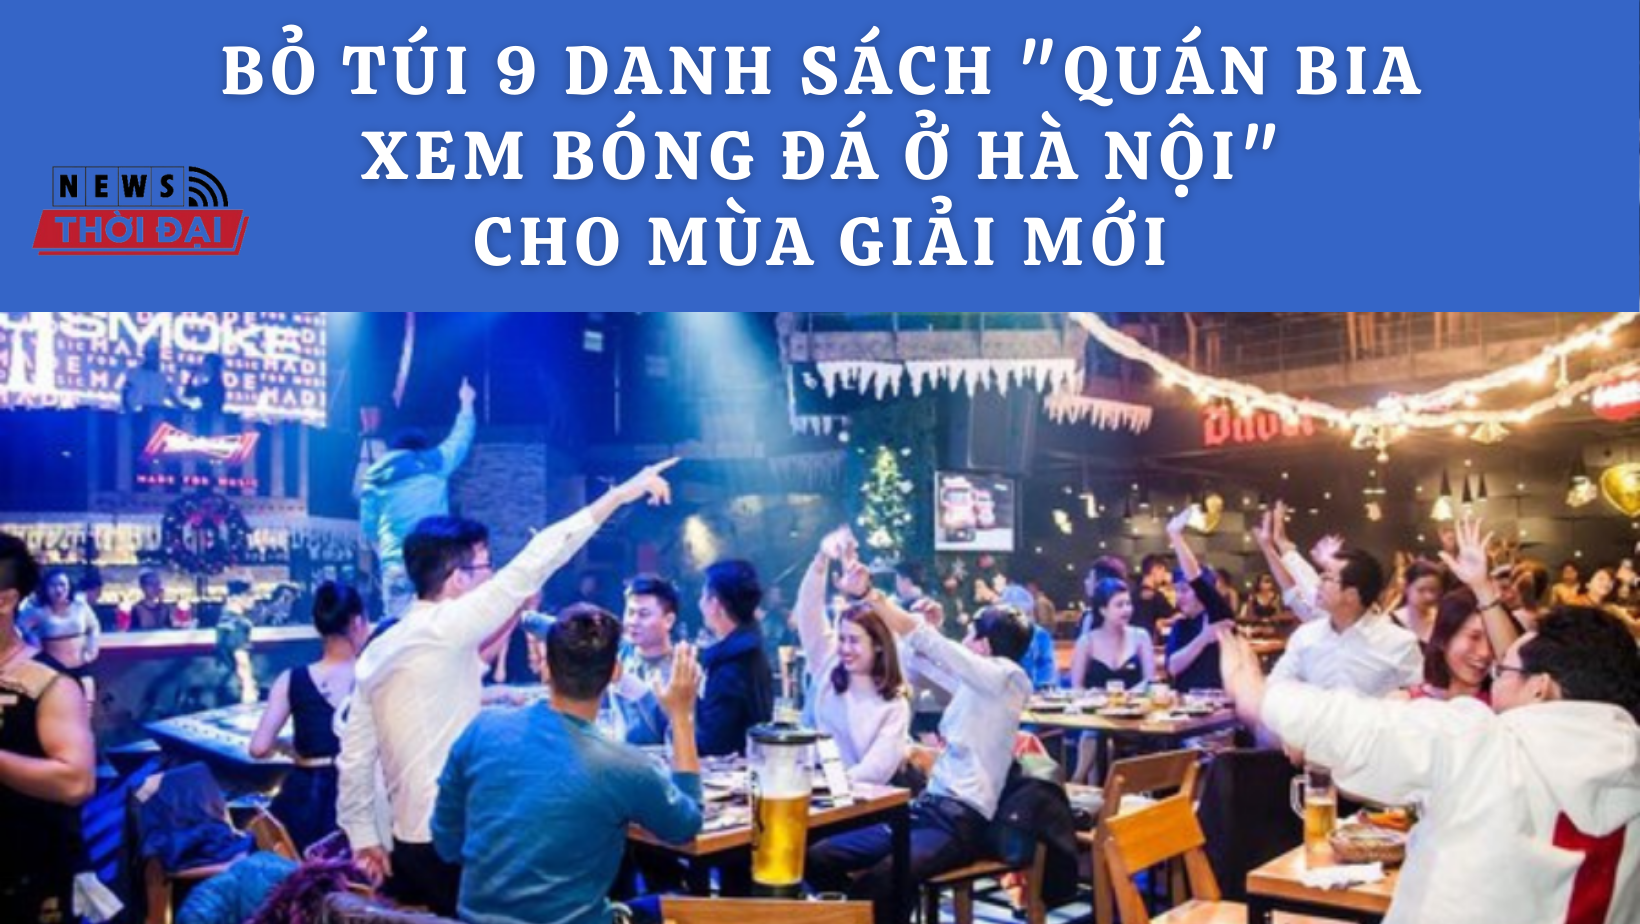 Bỏ túi 9 danh sách “quán bia xem bóng đá ở Hà Nội” cho mùa giải mới